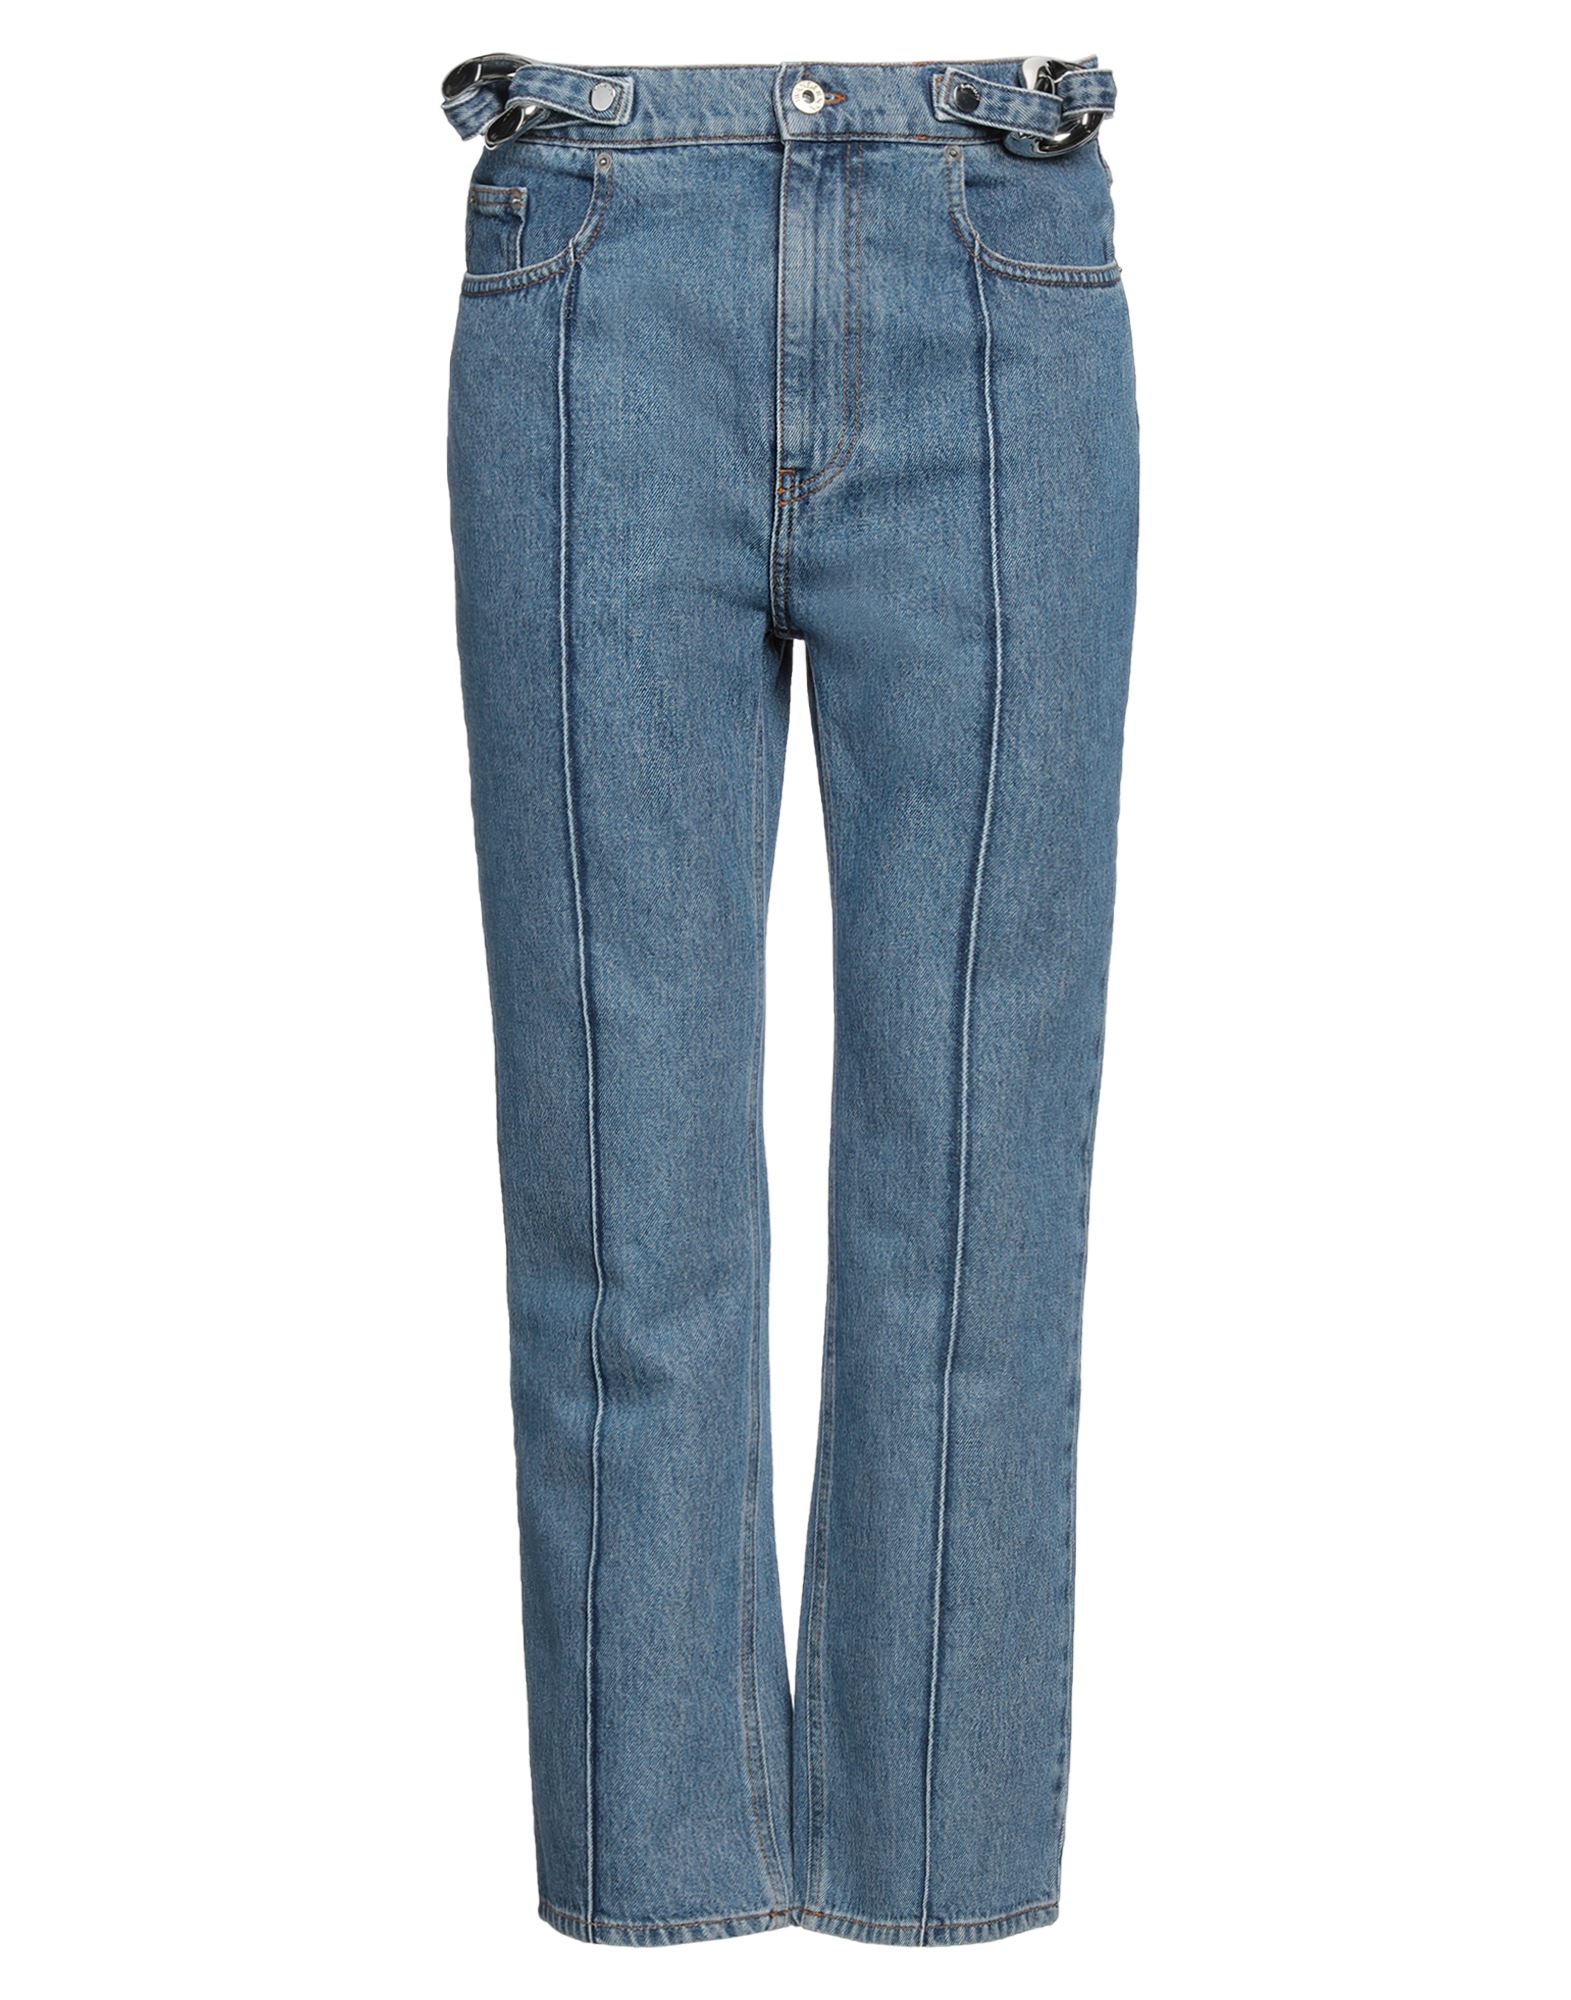 Shop Jw Anderson Man Jeans Blue Size 32 Cotton